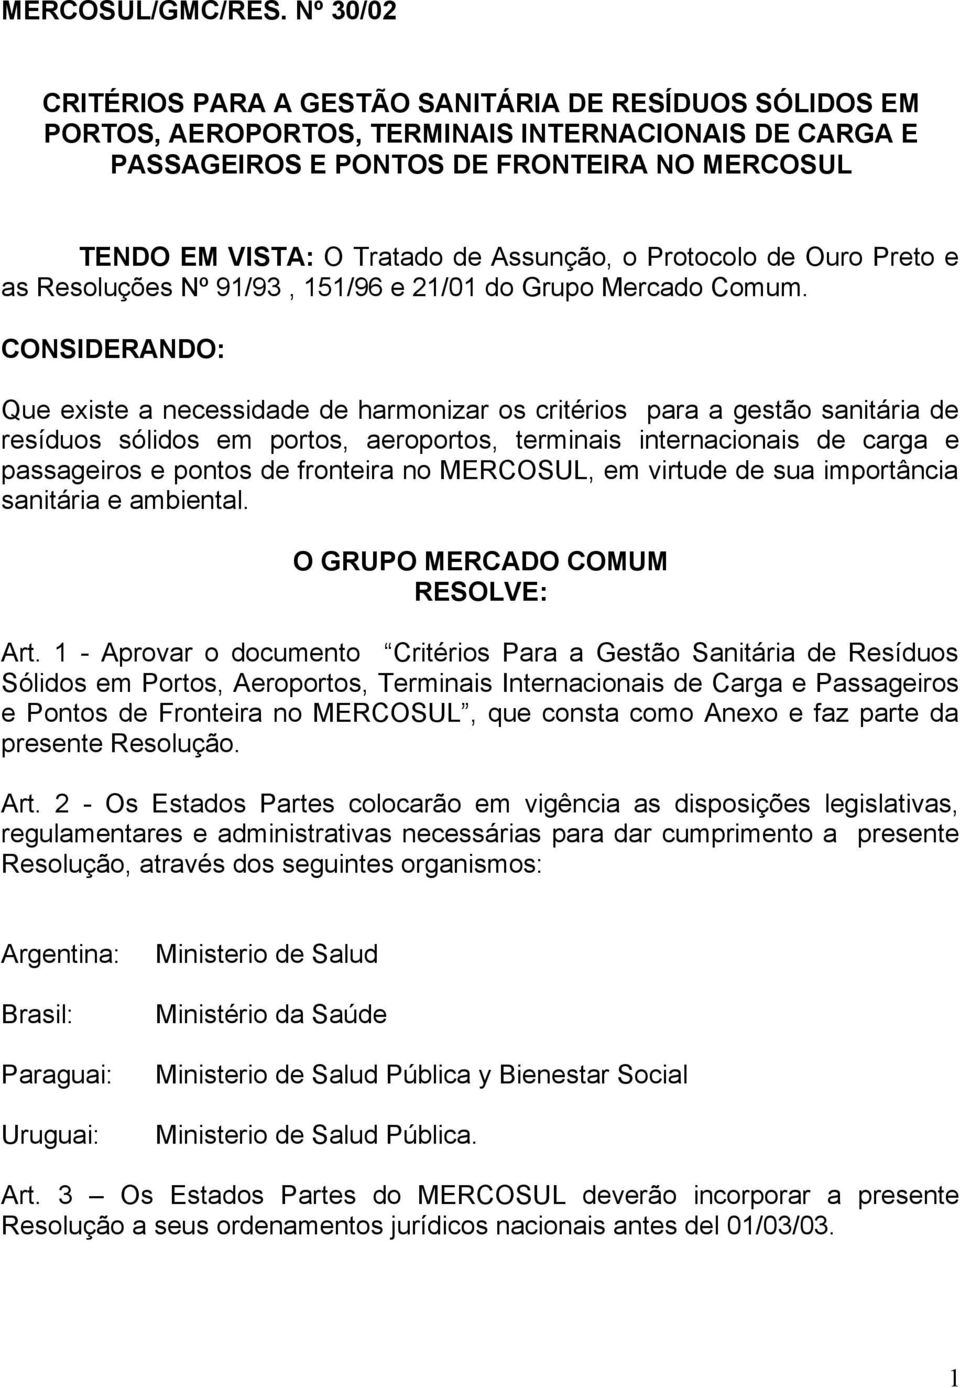 Assunção, o Protocolo de Ouro Preto e as Resoluções Nº 91/93, 151/96 e 21/01 do Grupo Mercado Comum.